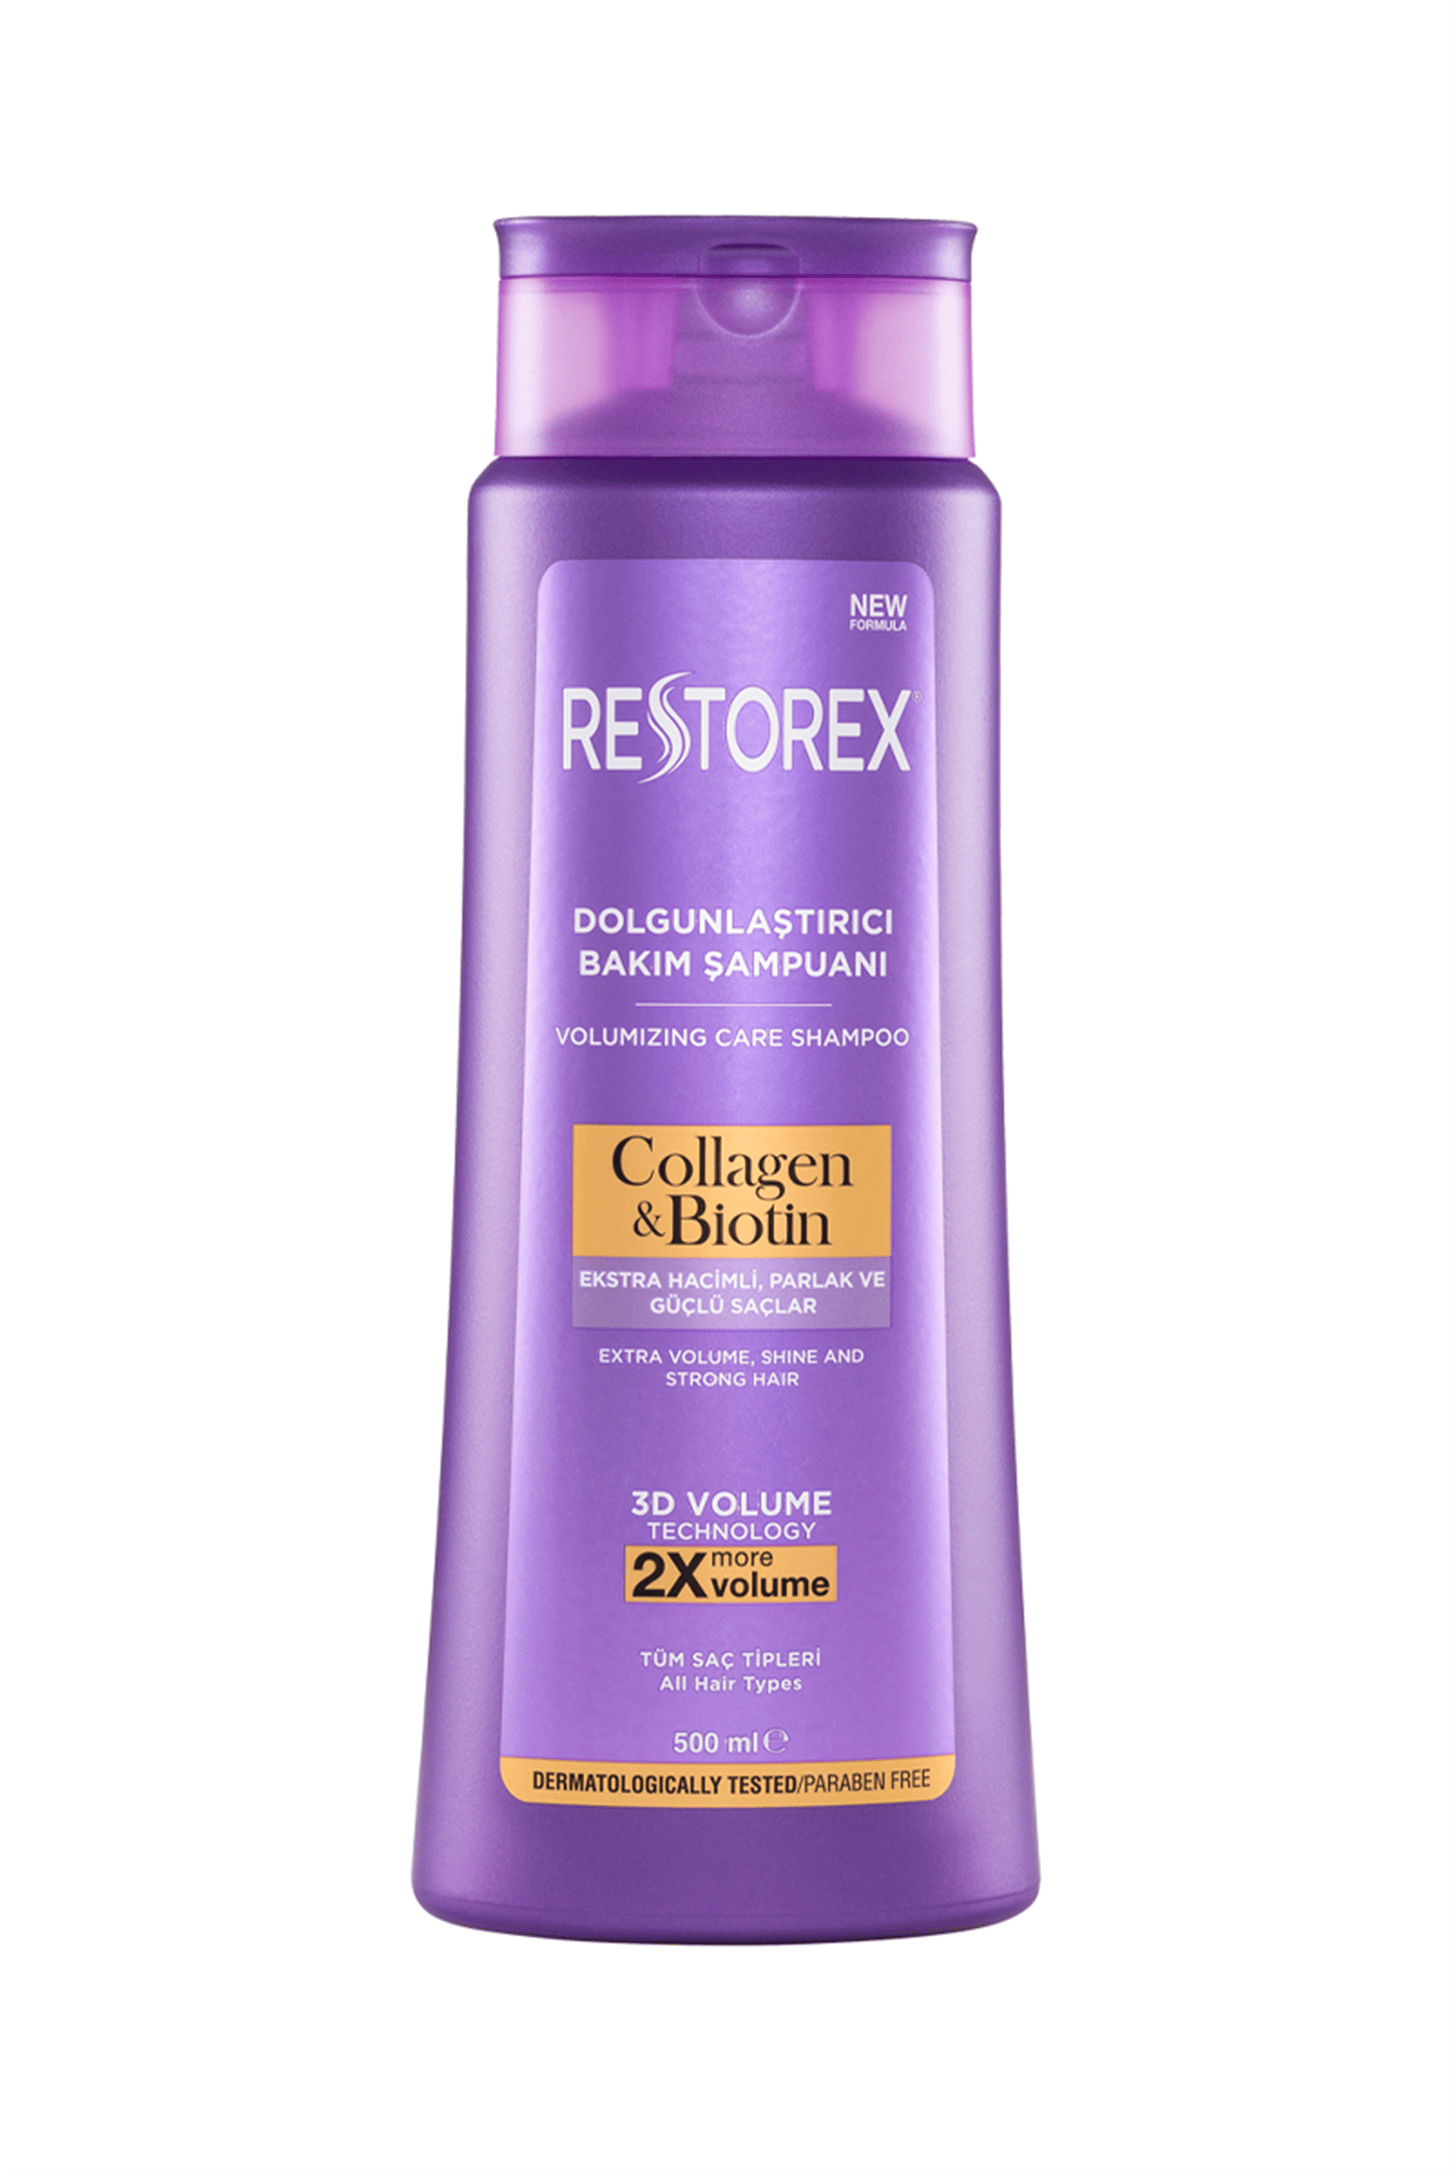 Restorex Dolgunlaştırıcı Bakım Şampuanı 500 ml | EczanemveBen.com